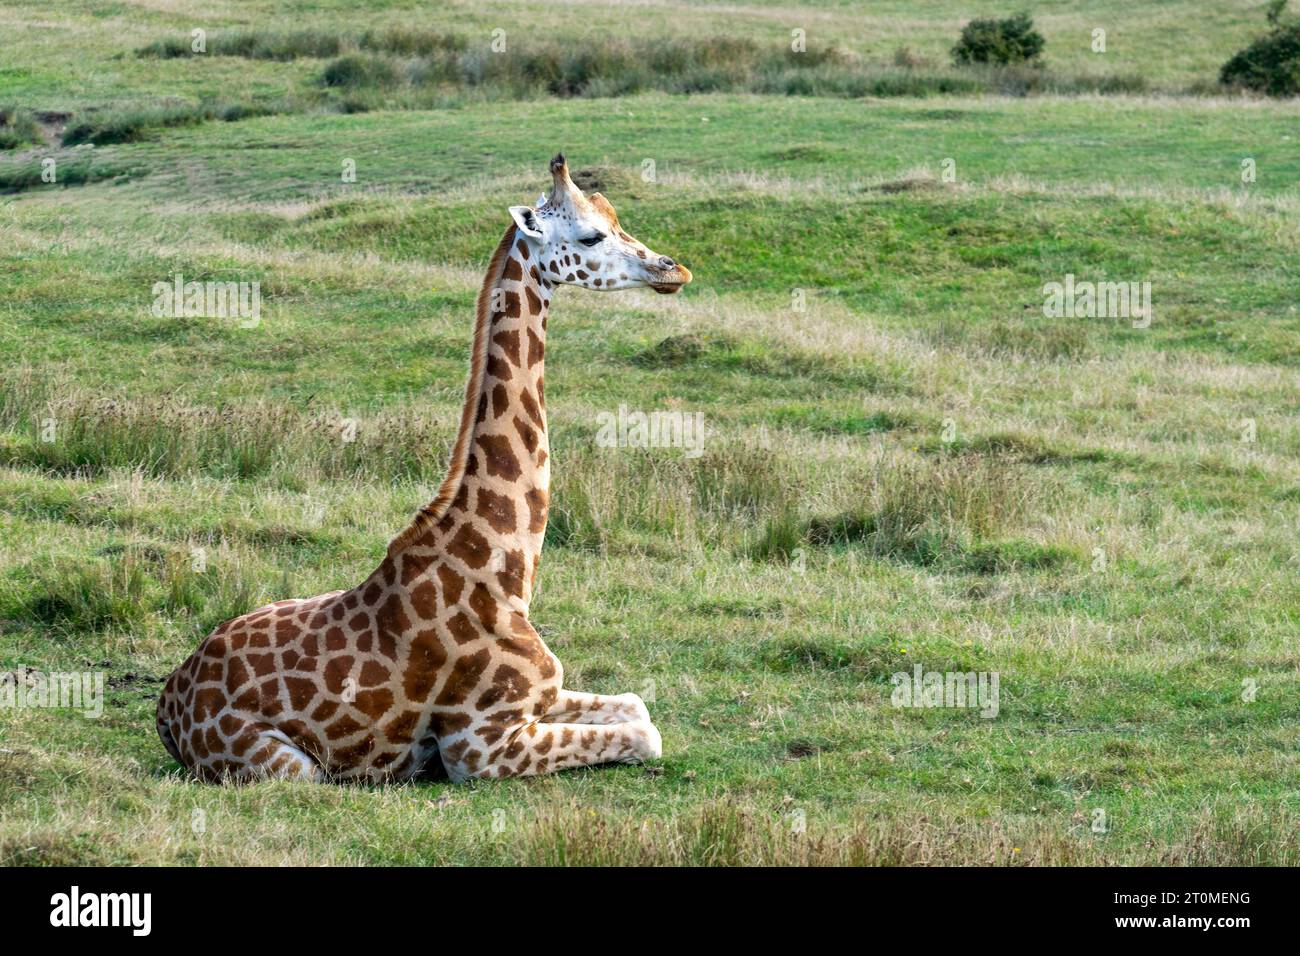 Jeune girafe assis et reposant dans un environnement naturel Banque D'Images